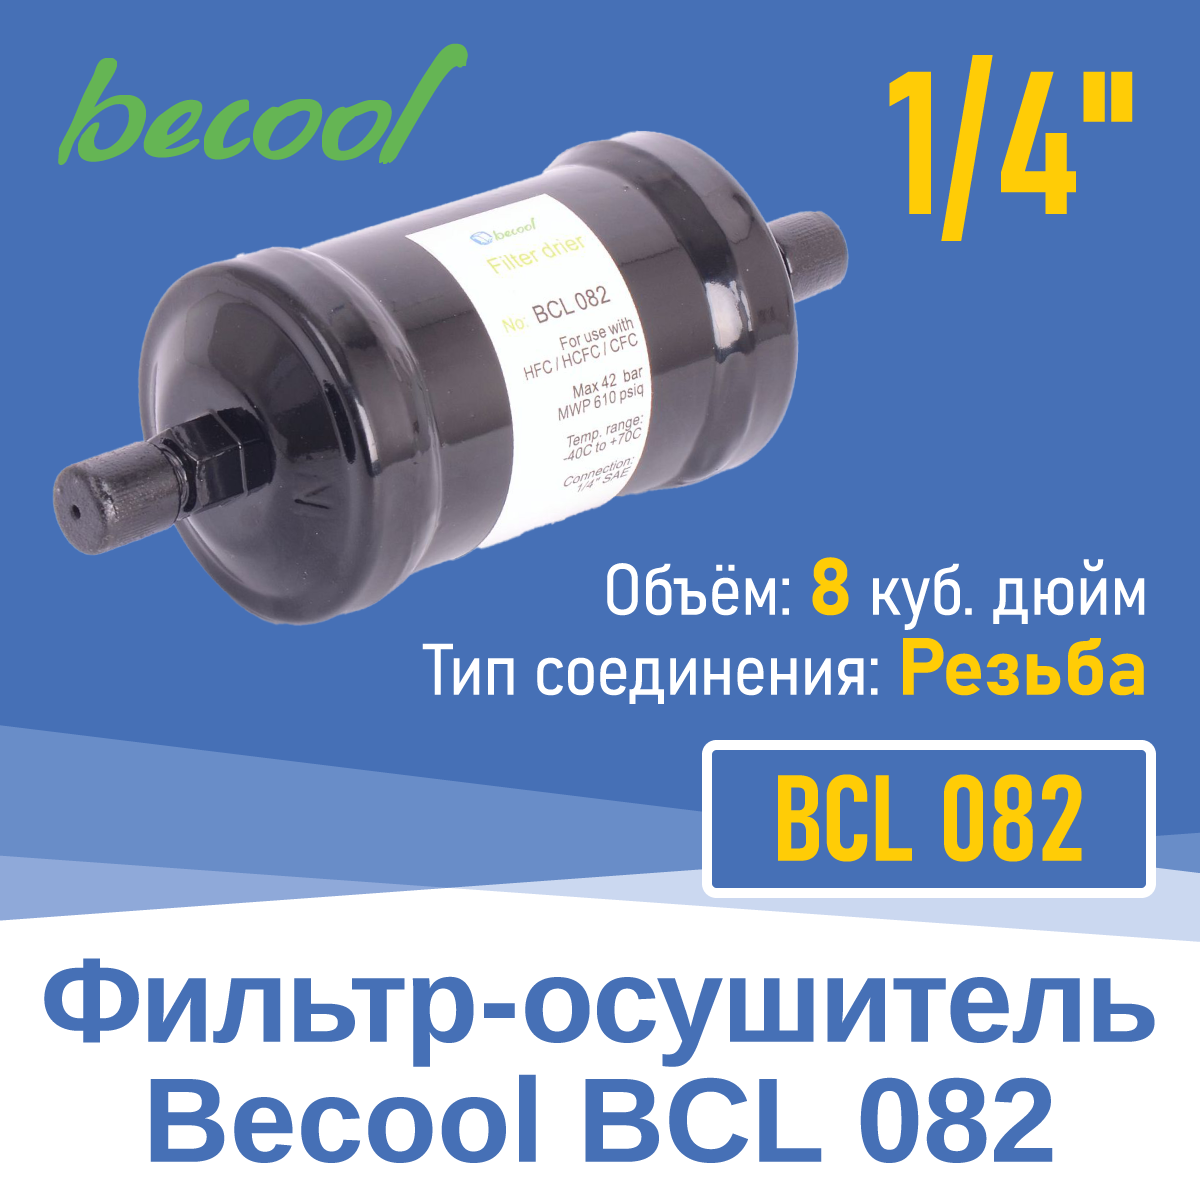 Фильтр-осушитель 1/4" BCL 082 с резьбой (018664)